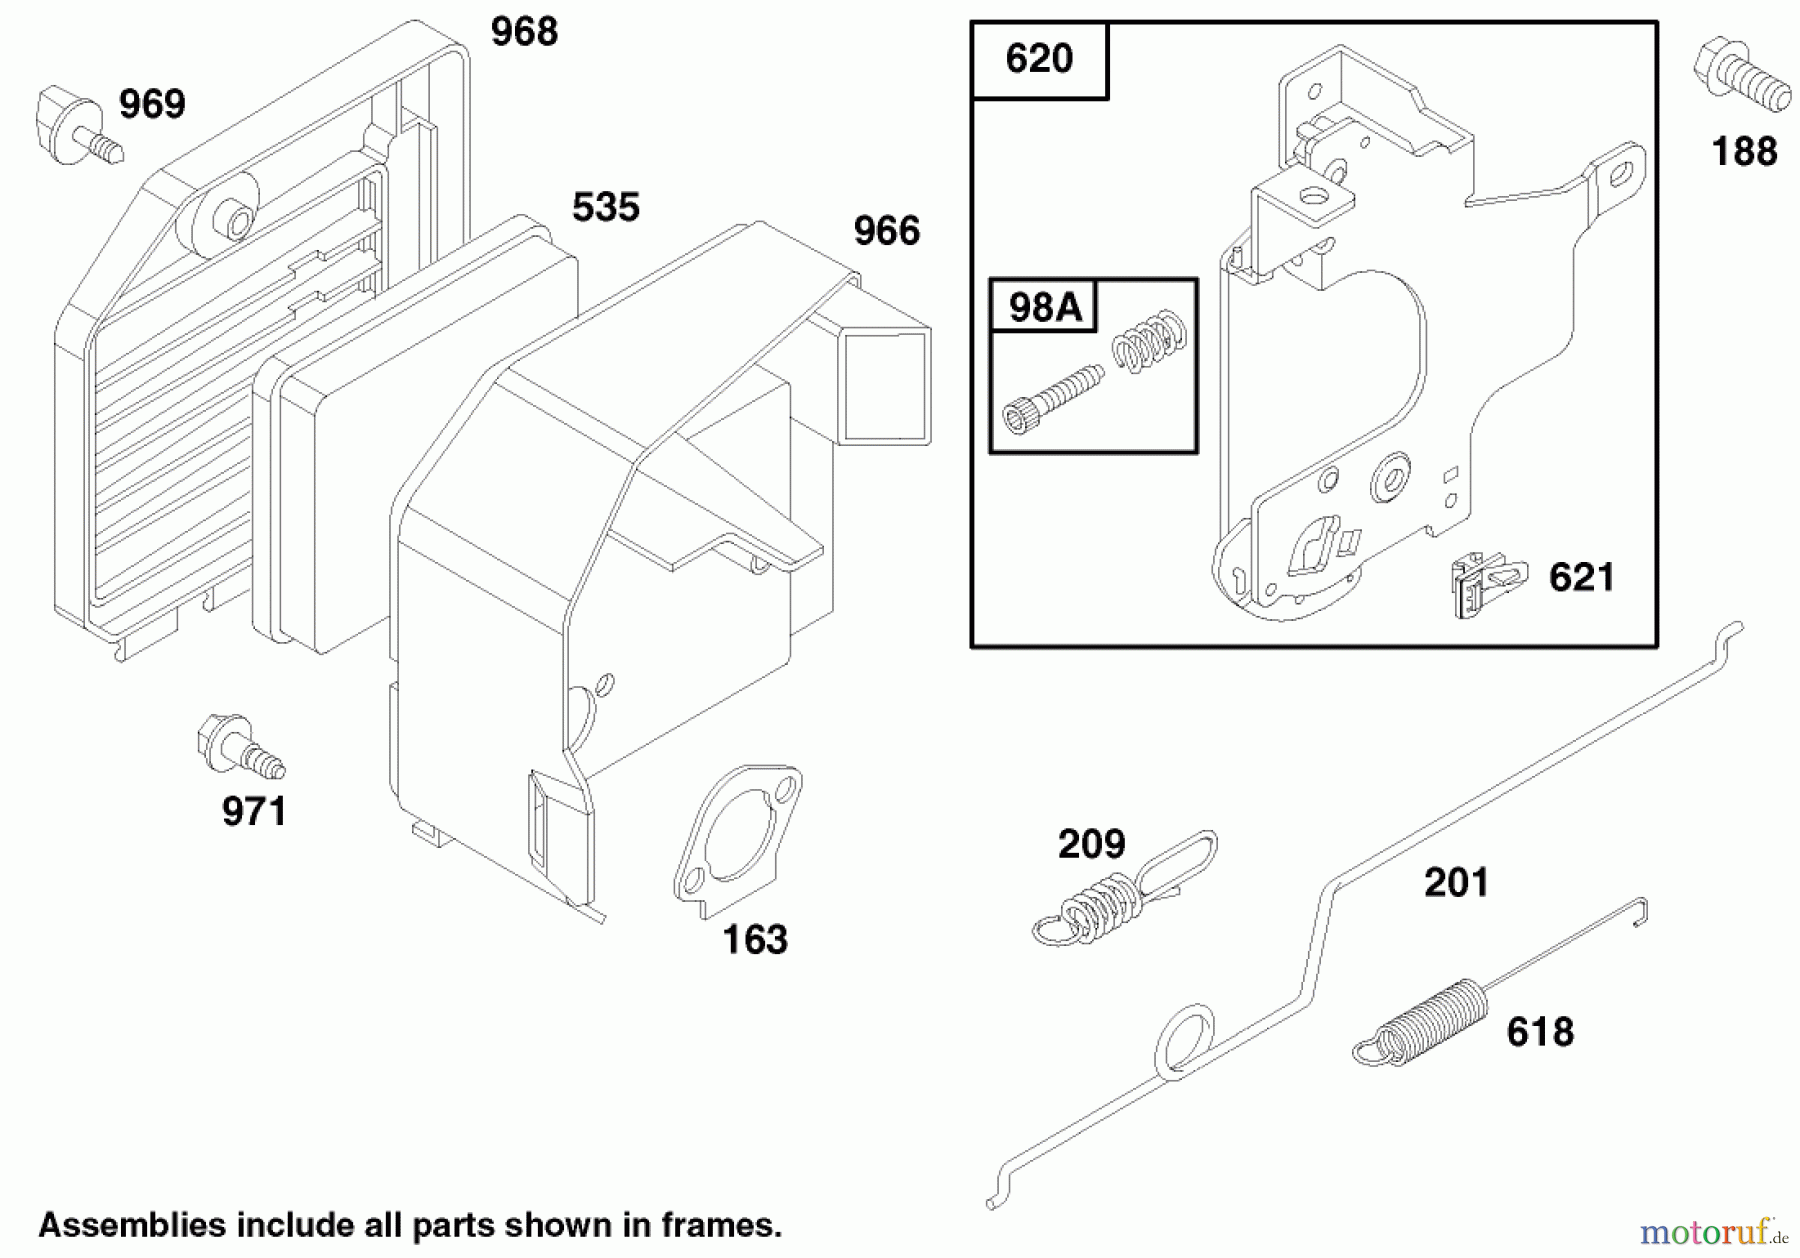  Toro Neu Mowers, Walk-Behind Seite 1 20481 - Toro Super Recycler Lawn Mower, 1997 (7900001-7999999) ENGINE GTS 150 #4